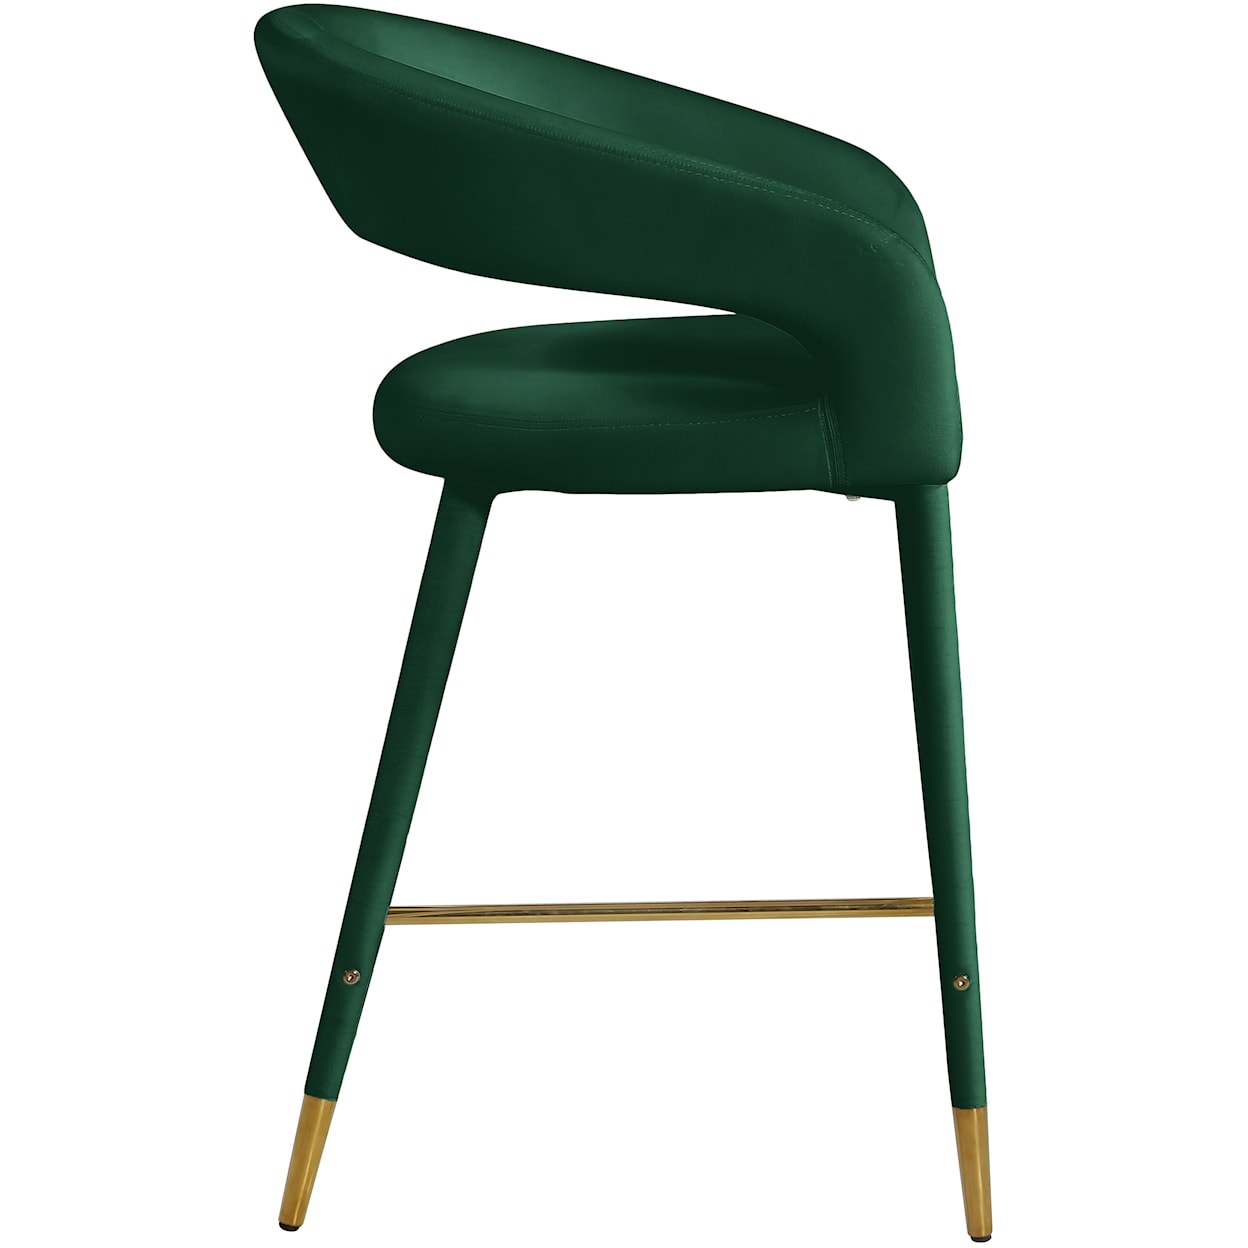 Meridian Furniture Destiny Upholstered Green Velvet Counter Stool